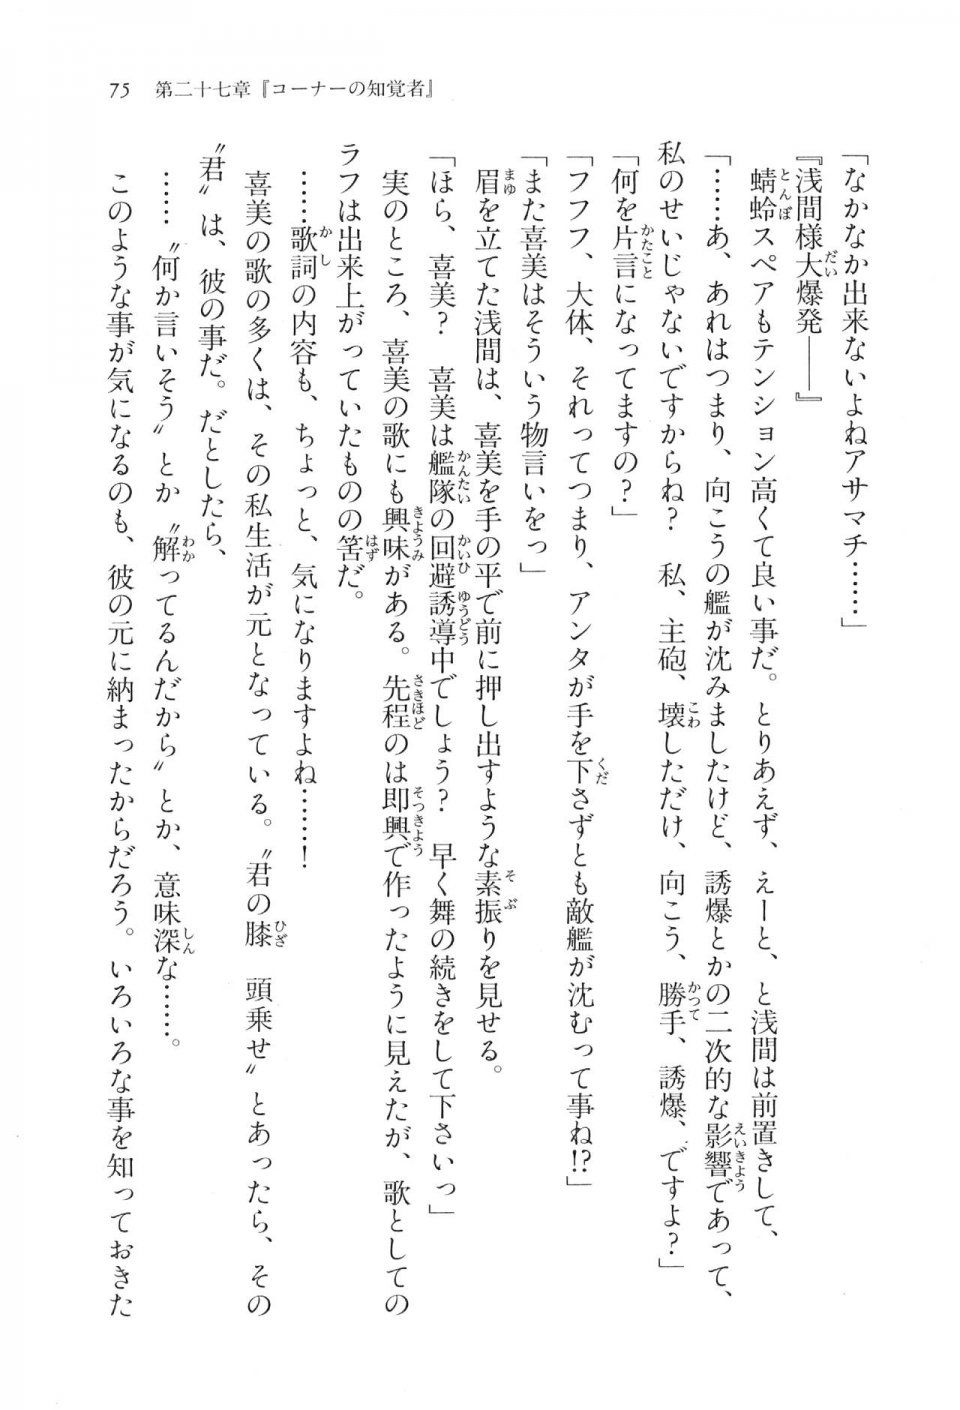 Kyoukai Senjou no Horizon LN Vol 17(7B) - Photo #75